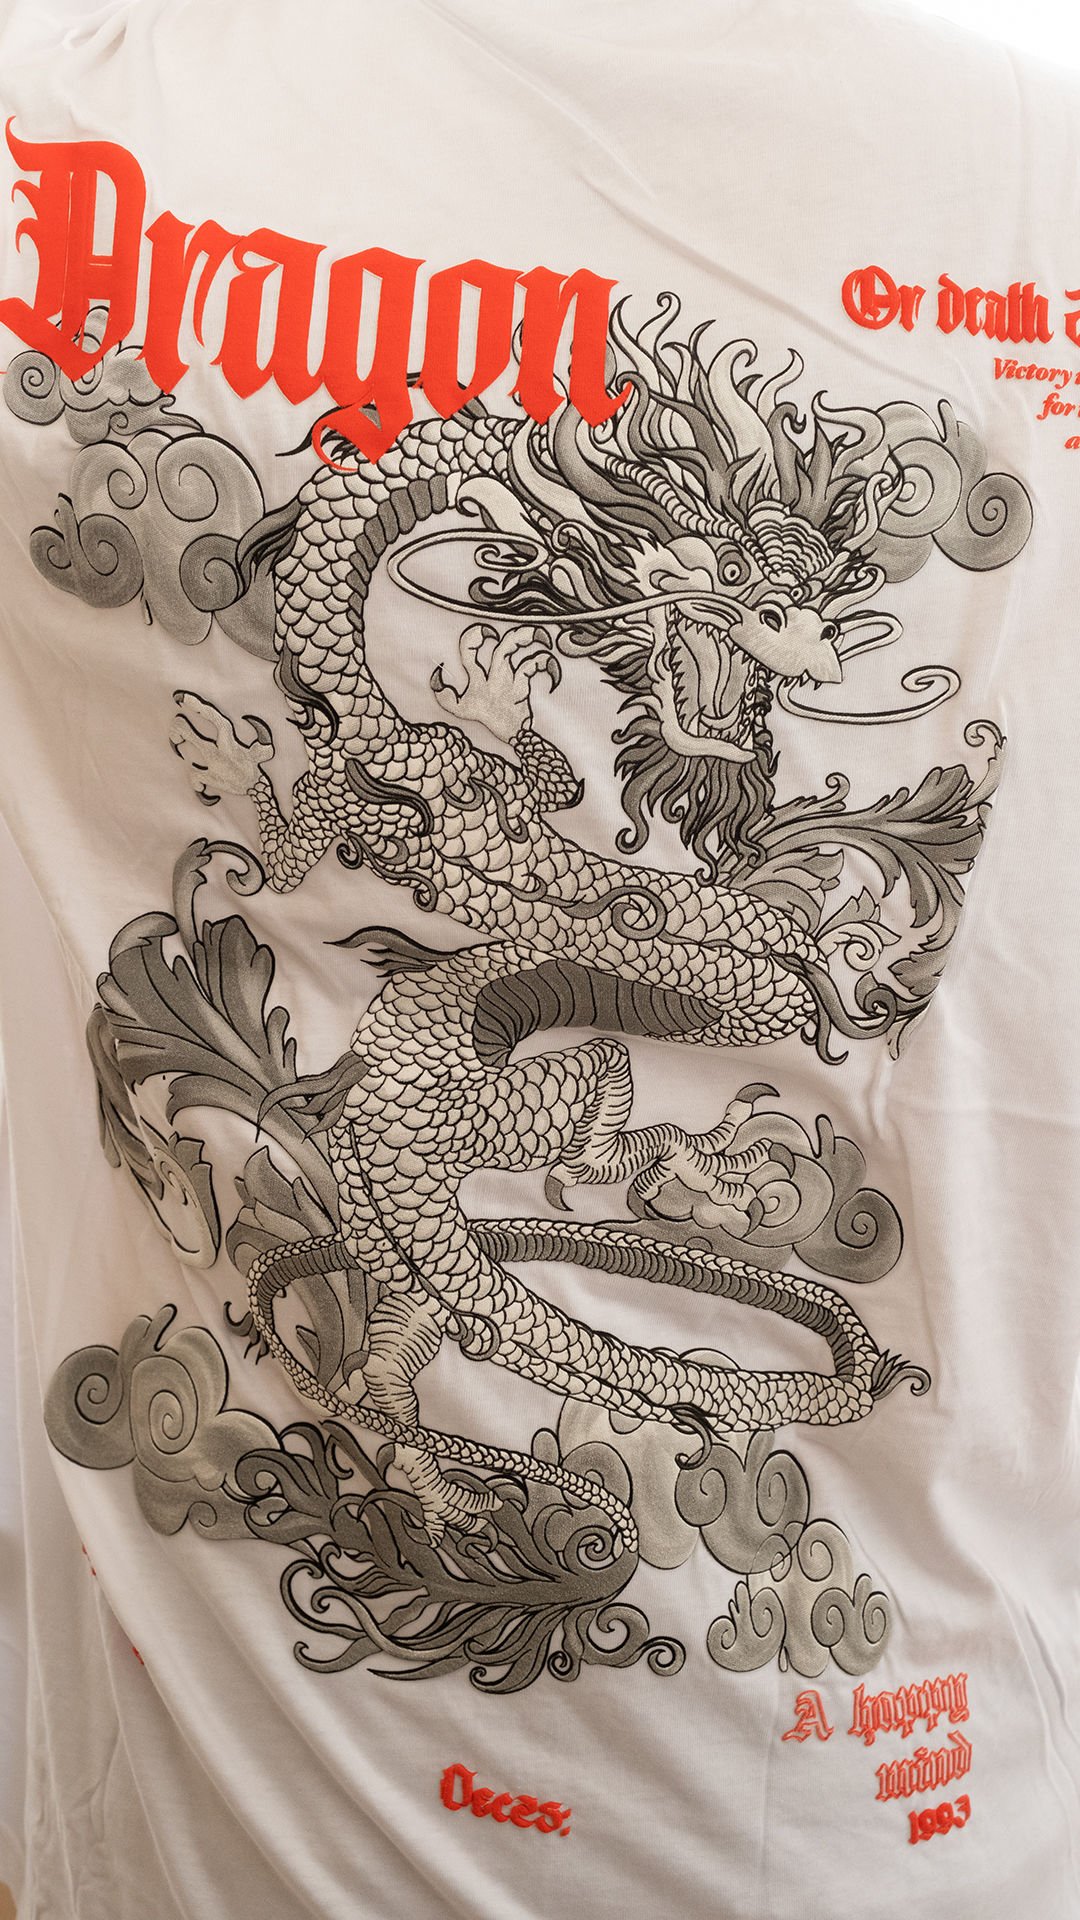 Dragon Or Death Baskılı Oversize T-shirt